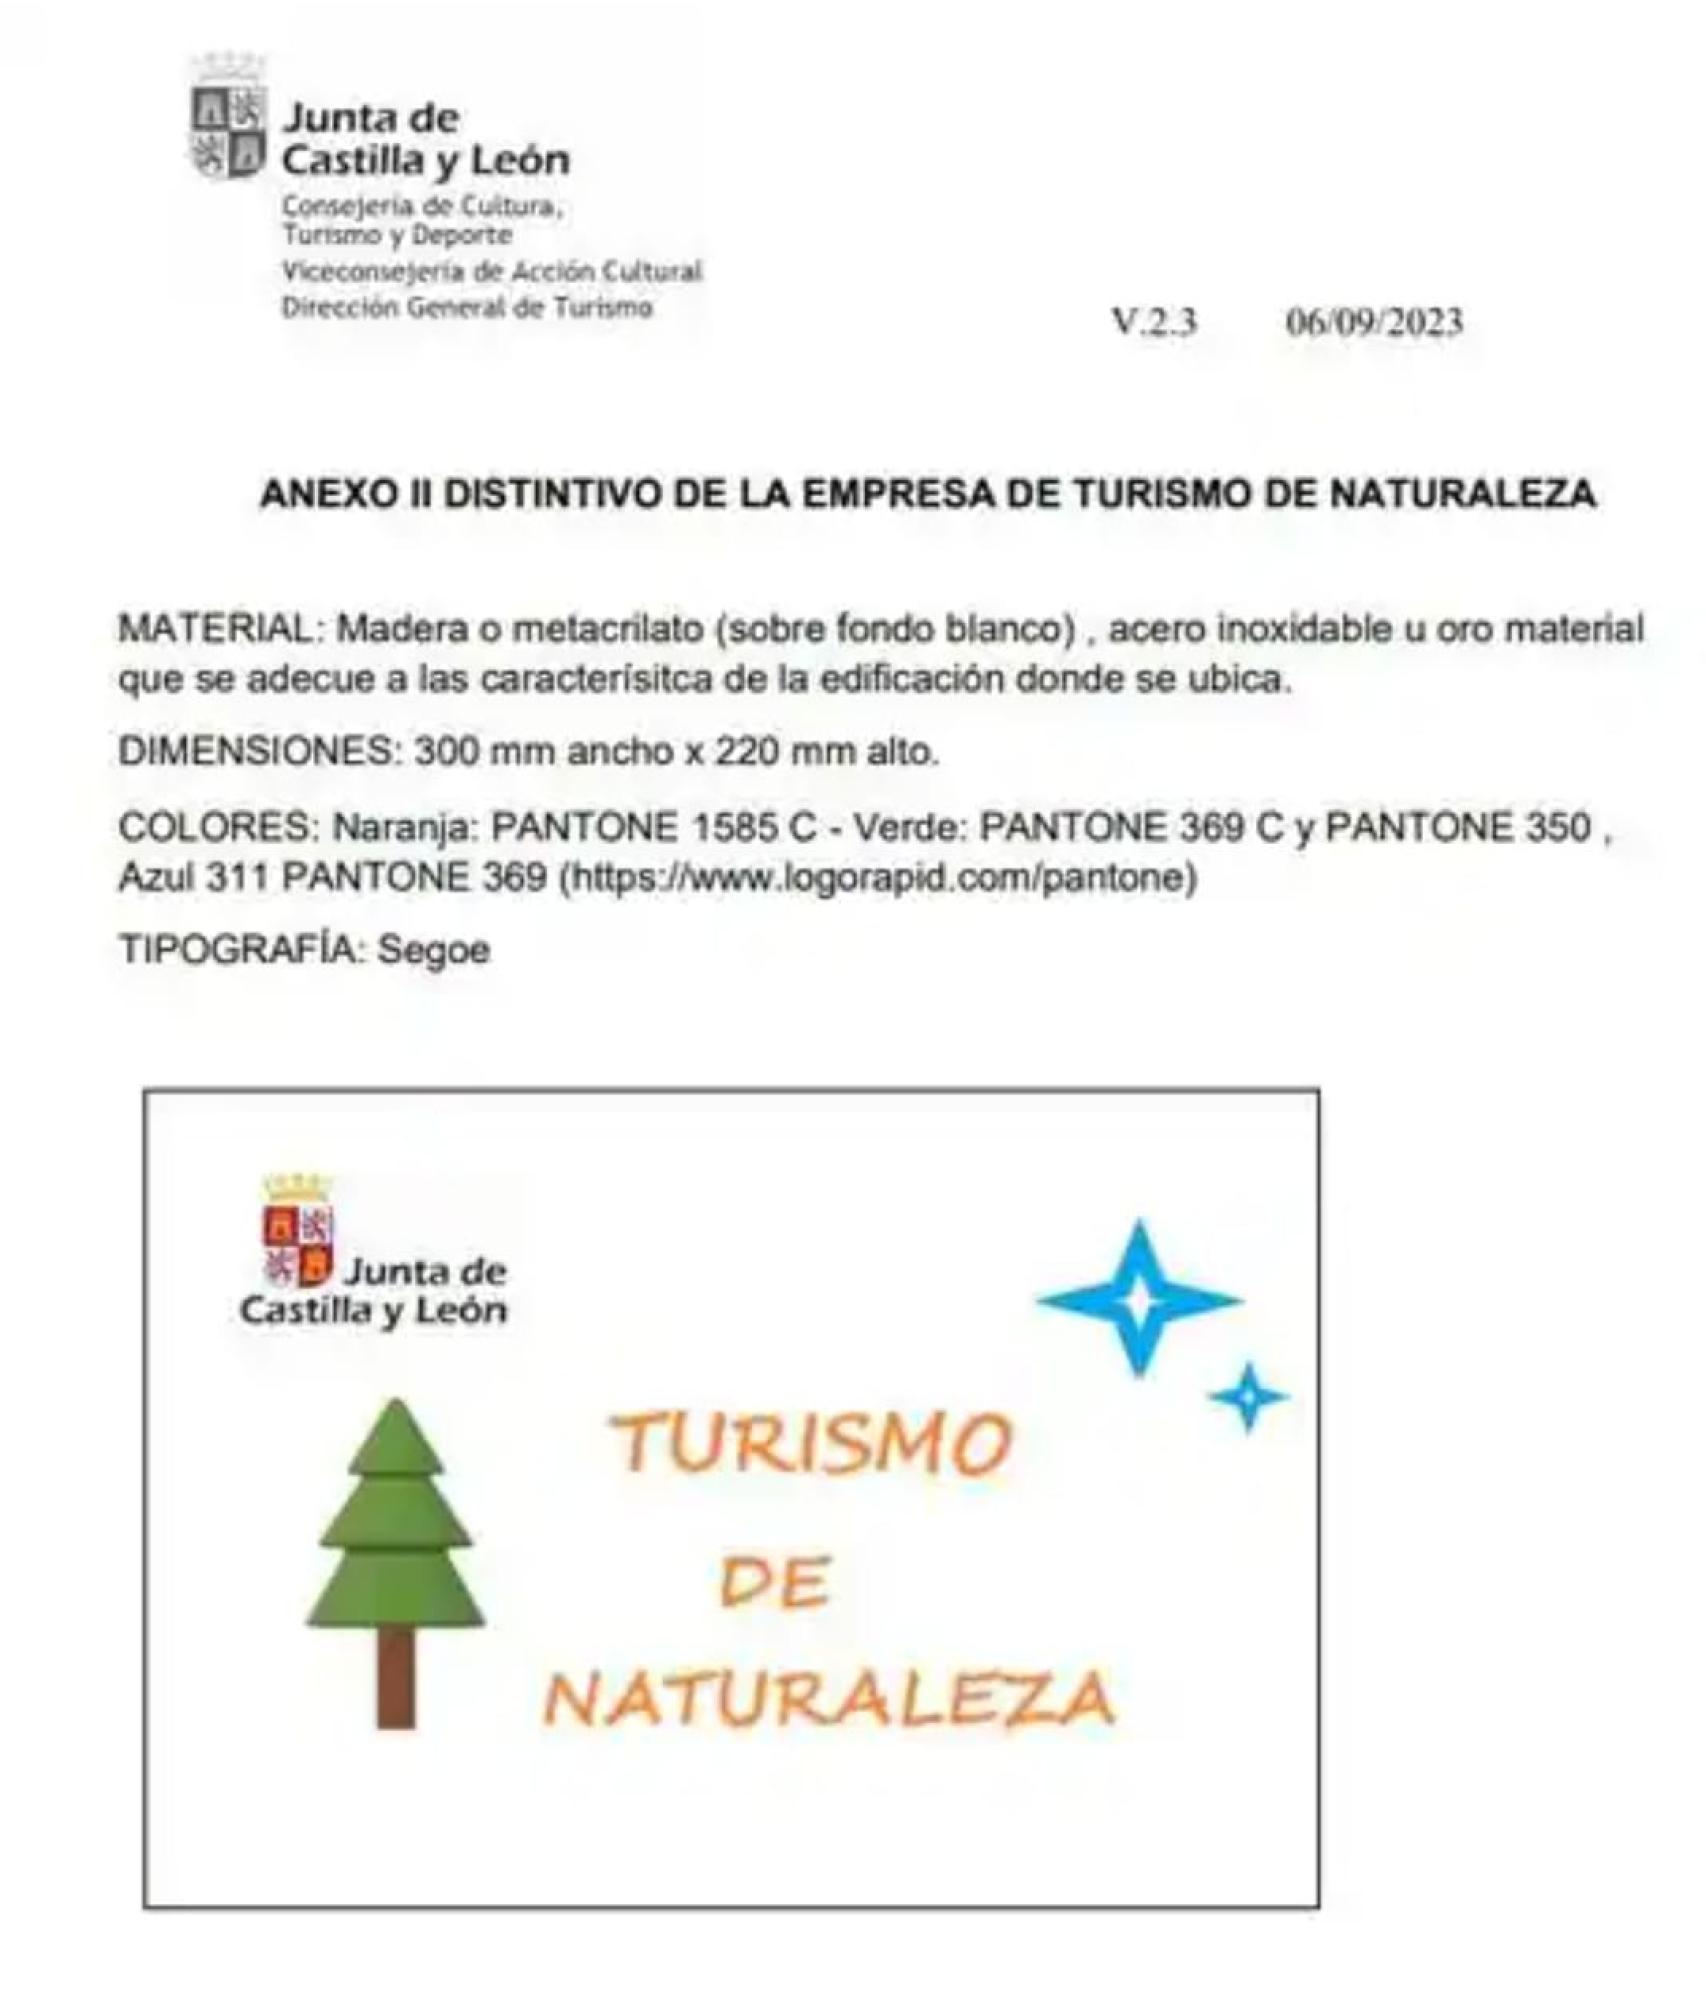 El logo aparece en el borrador del proyecto promovido por la Dirección General de Turismo de la Junta de Castilla y León